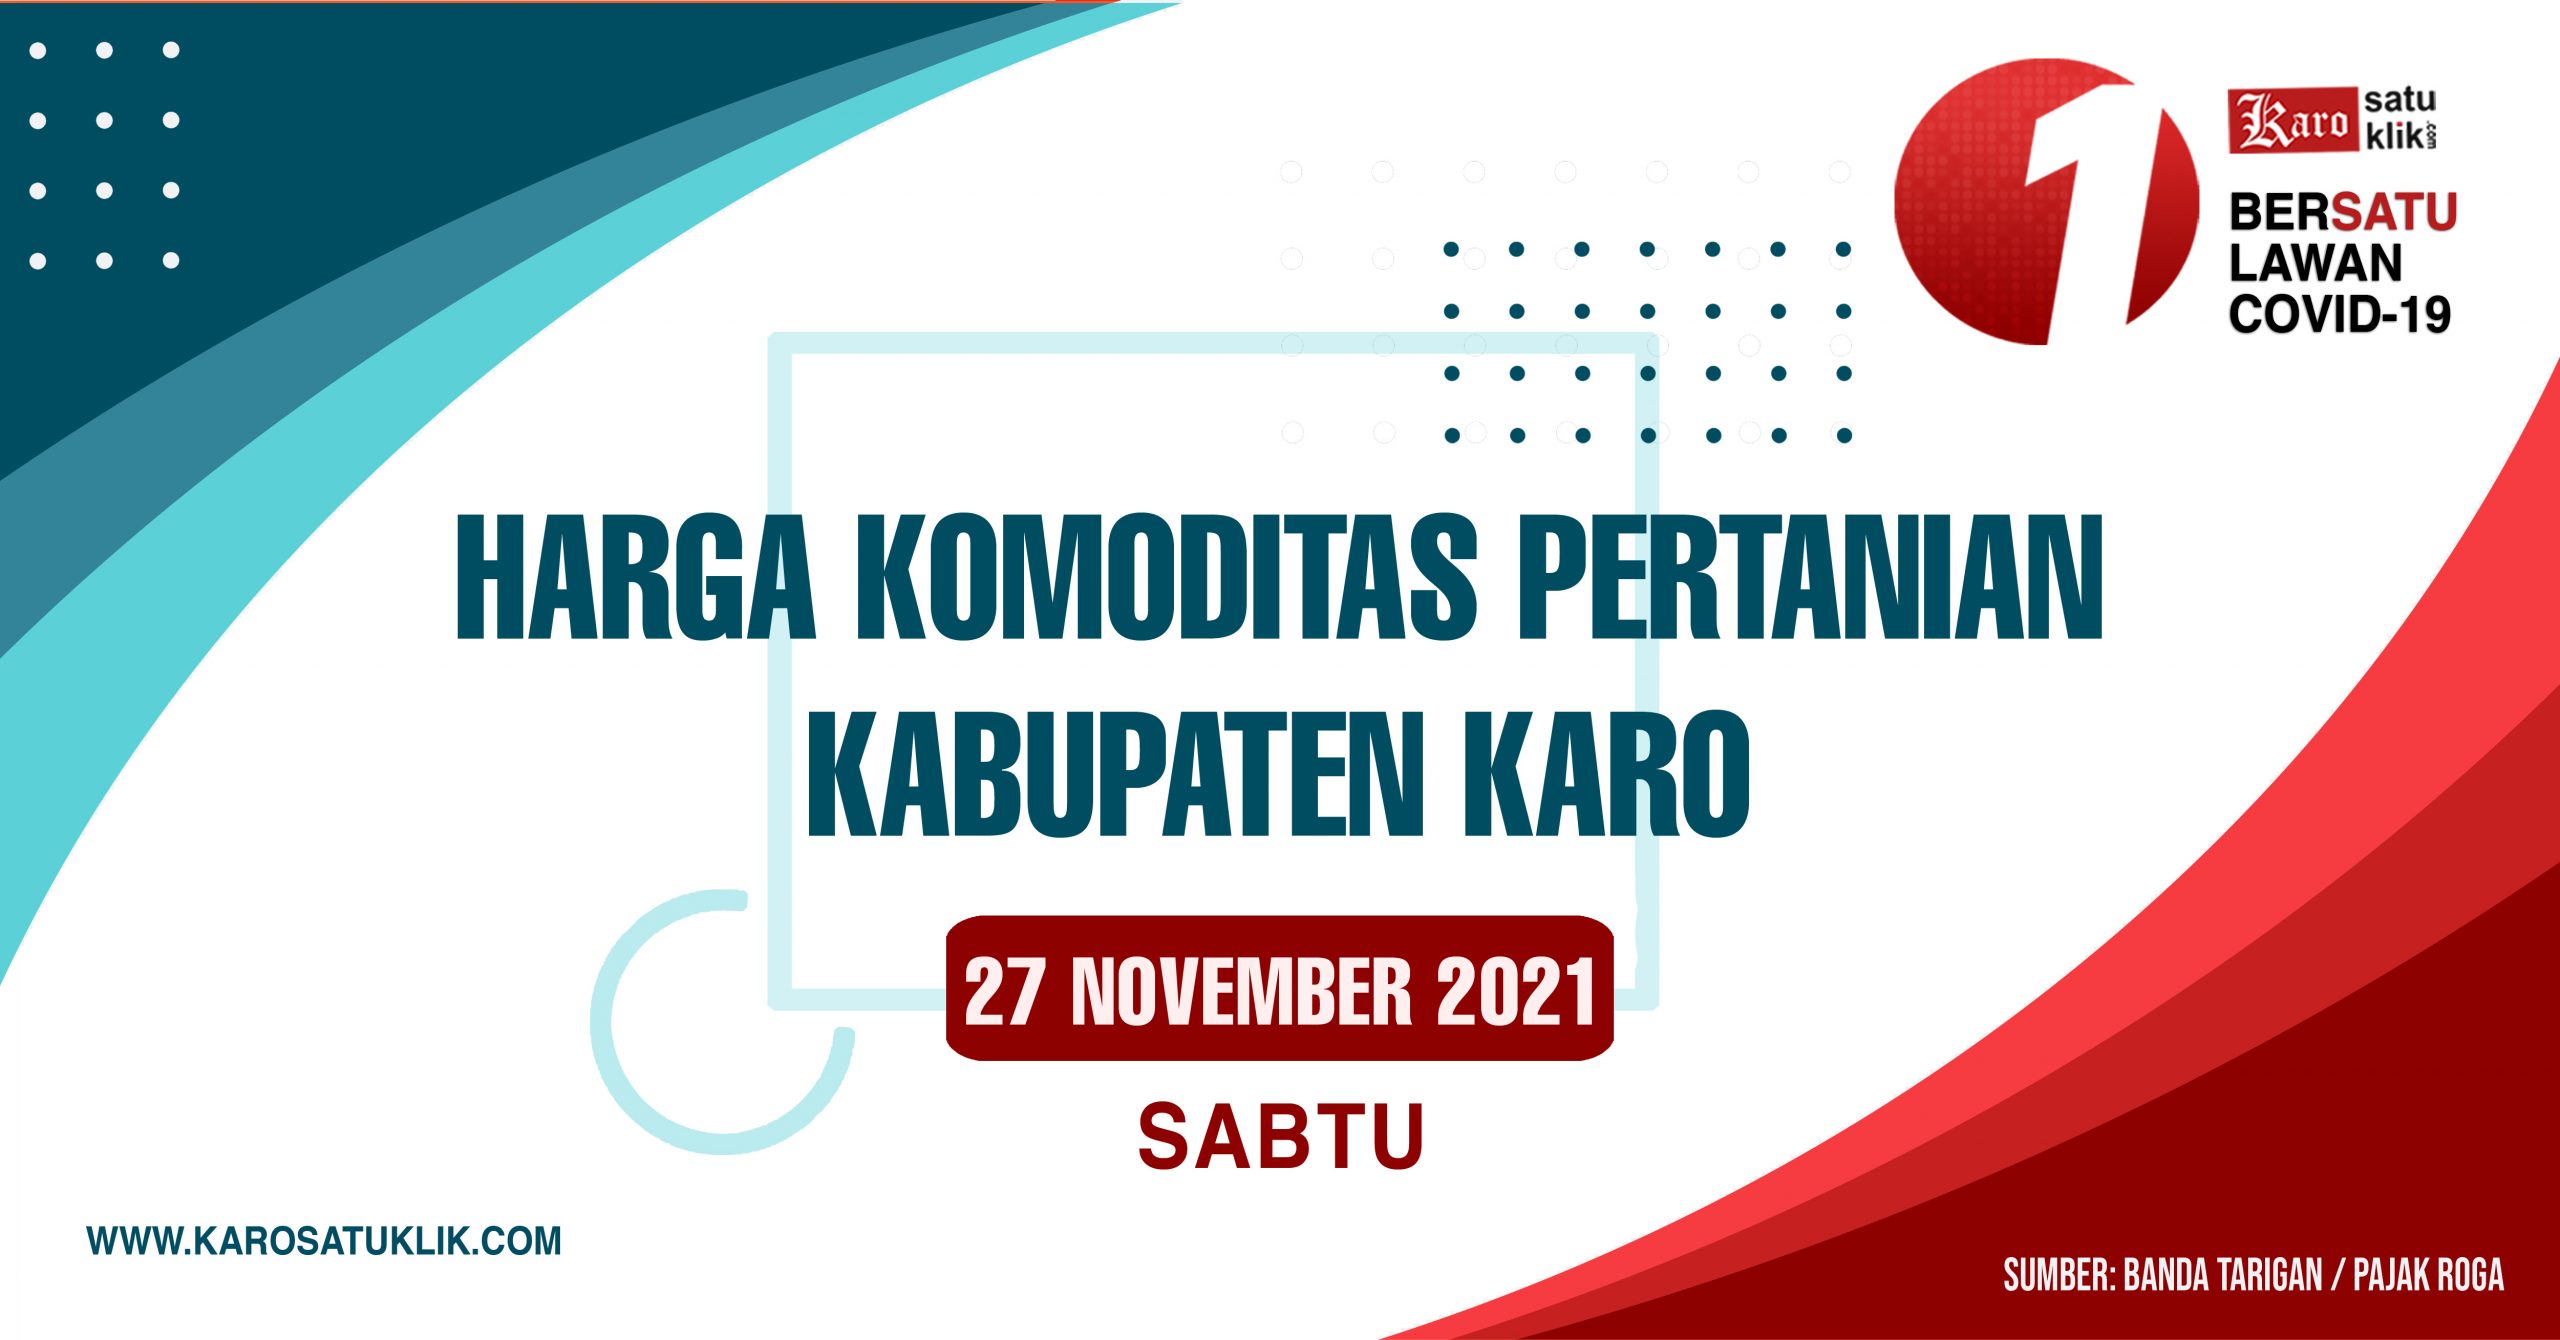 Daftar Harga Komoditas Pertanian Kabupaten Karo, 27 November 2021